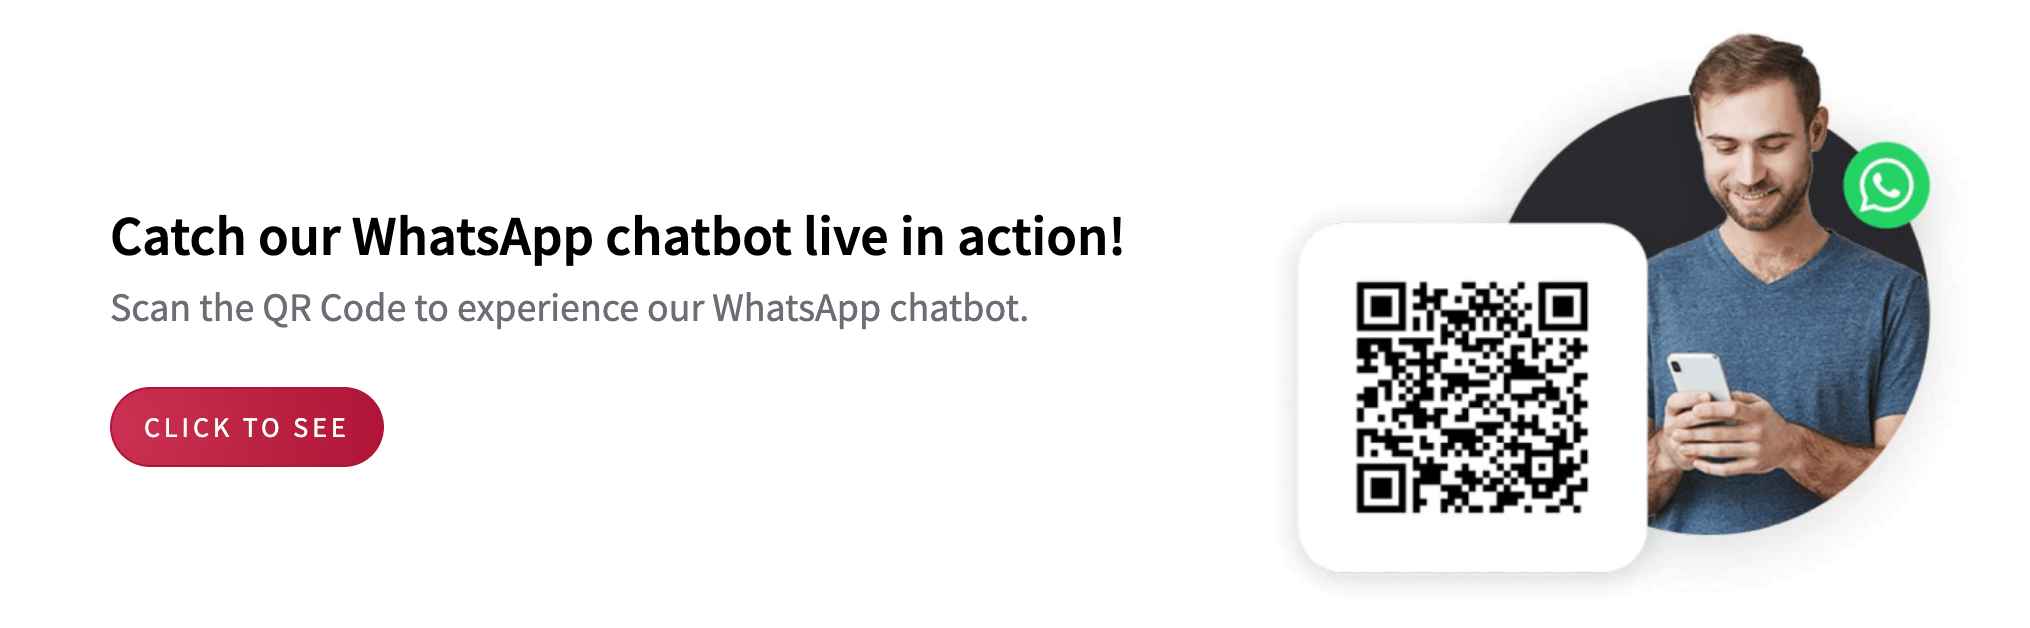 Engati's-WhatsApp-Chatbot